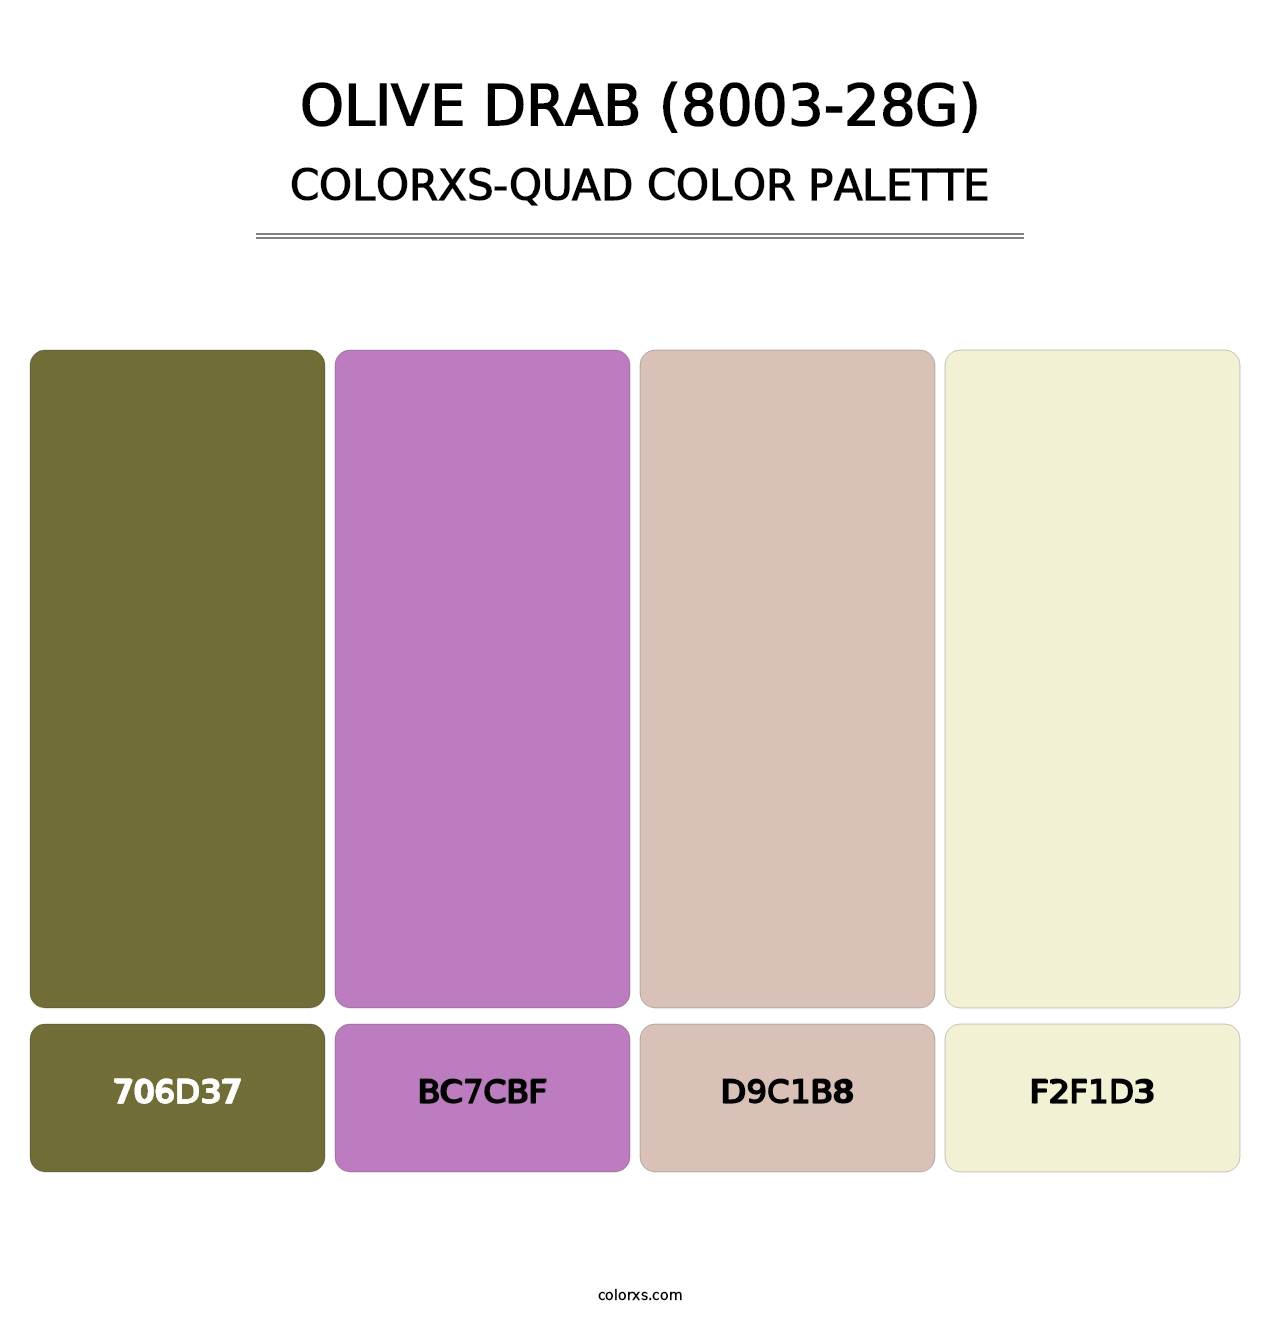 Olive Drab (8003-28G) - Colorxs Quad Palette